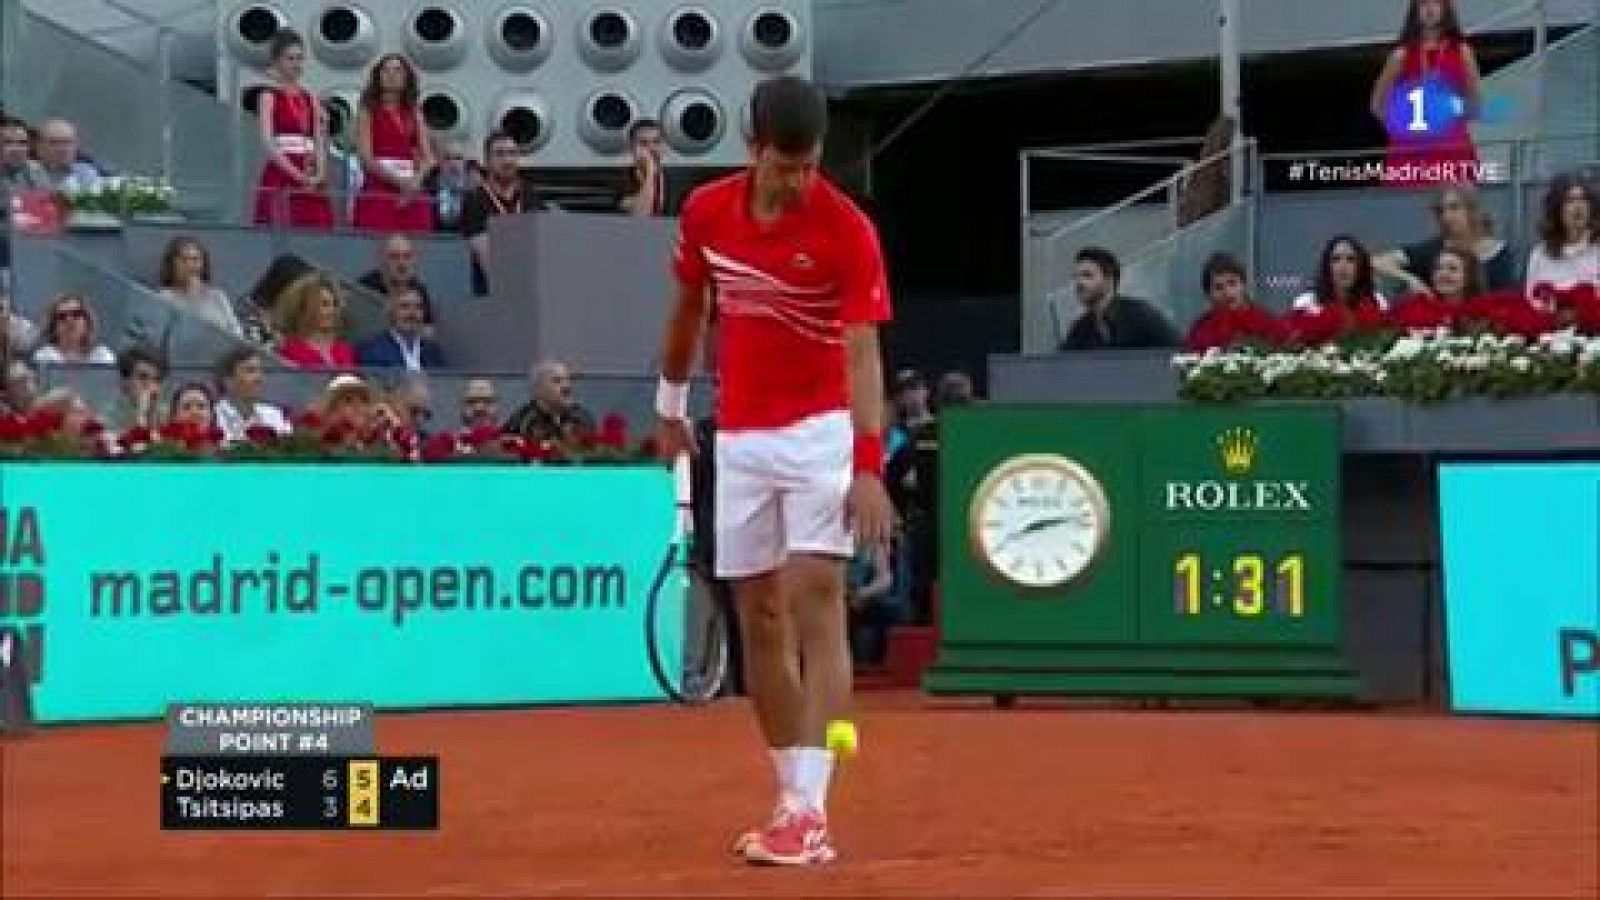 Novak Djokovic ha derrotado a Stefanos Tsitsipas en la final del Madrid Open 2019 por 6-3 y 6-4 y se ha hecho con su tercer torneo madrileño. El serbio no ha dado opción a su rival.